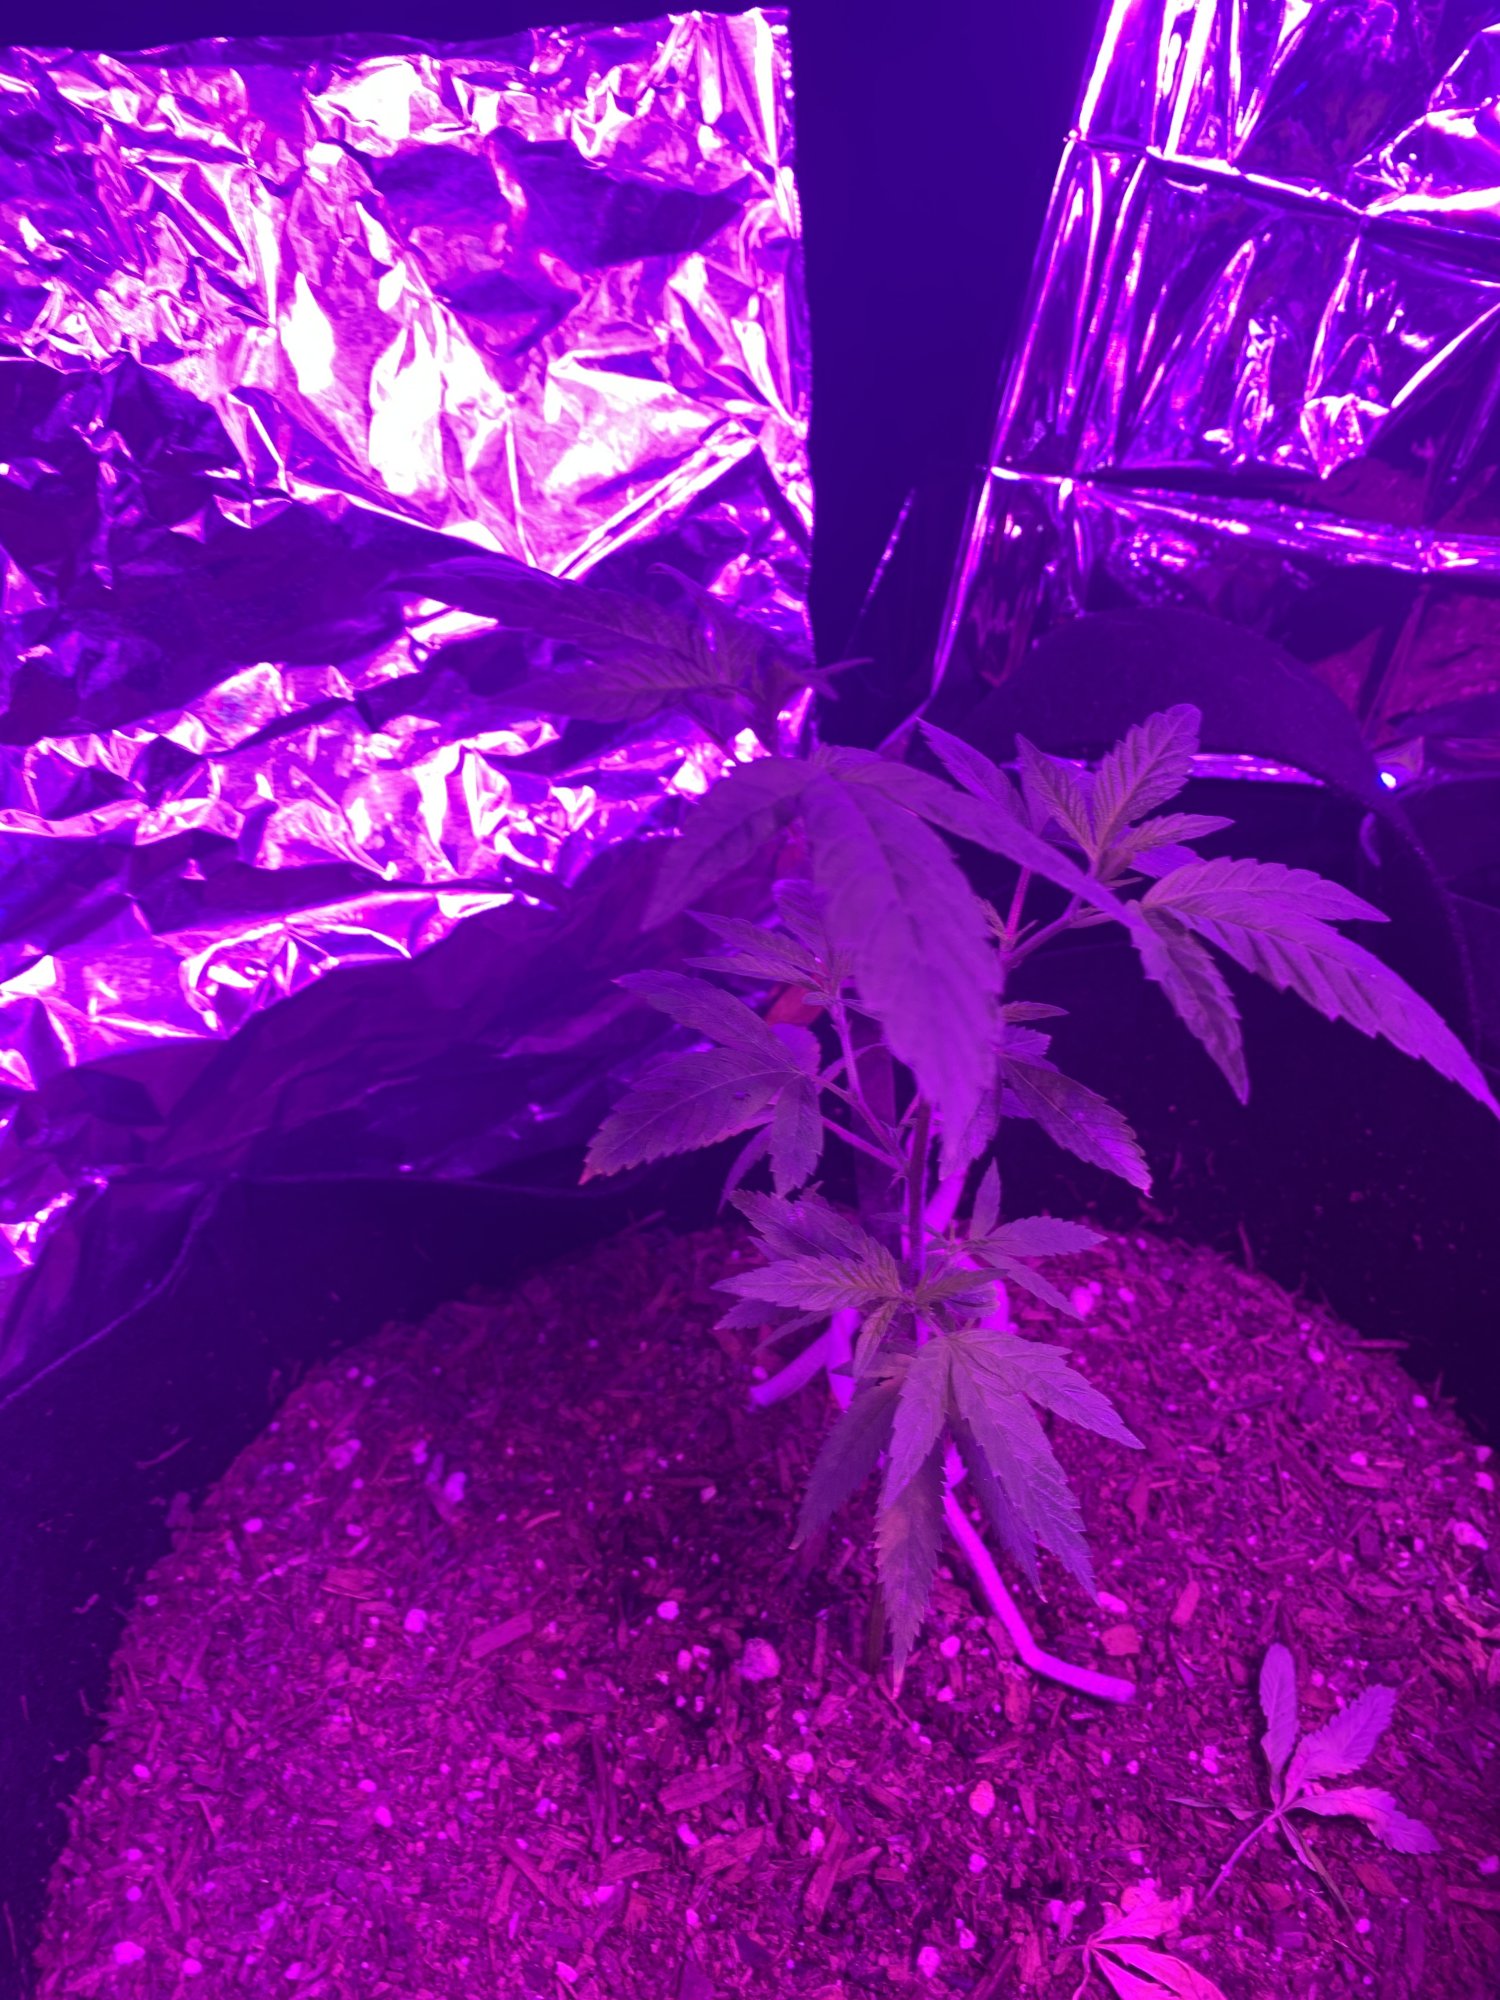 First indoor grow  looking good so far 4